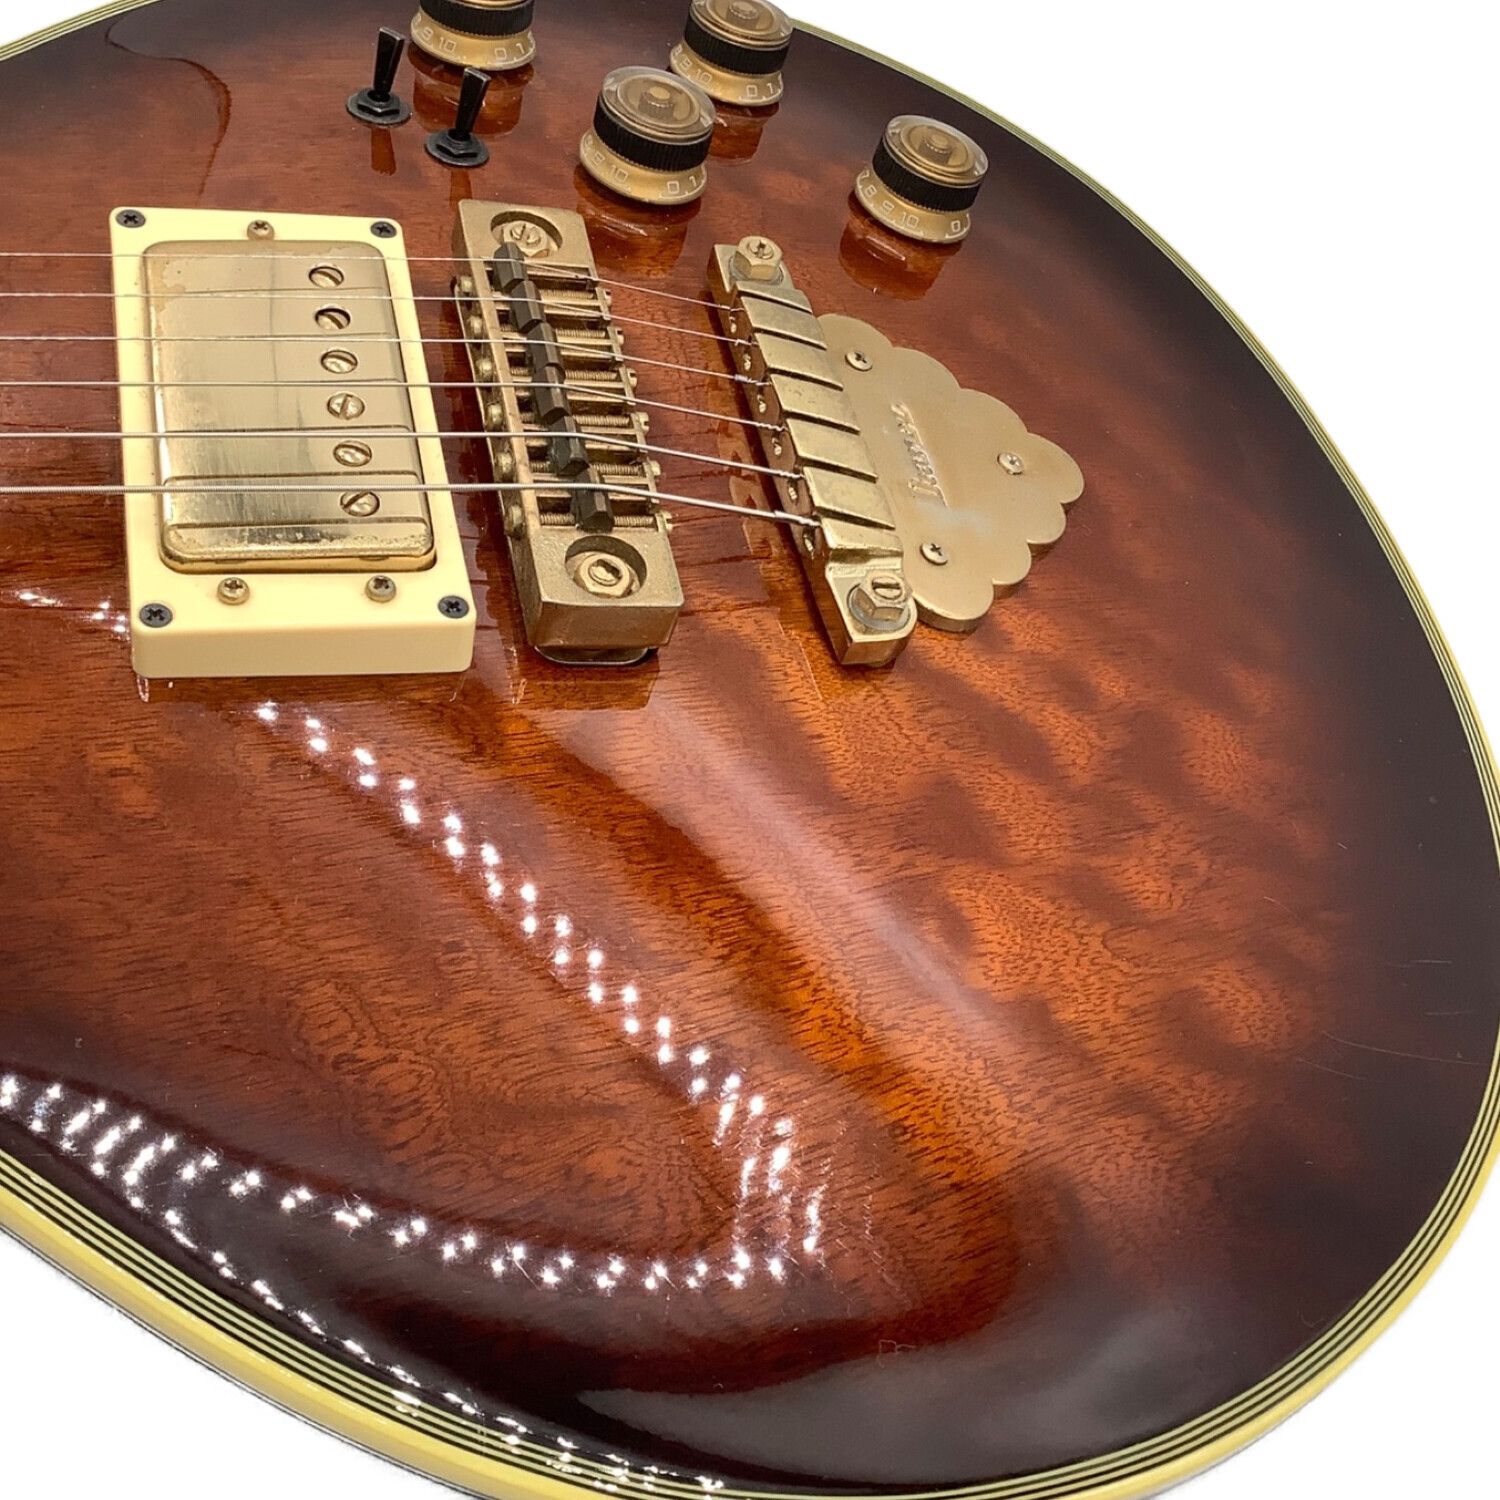 アイバニーズギターar300値下げ60000円 - 茨城県の楽器